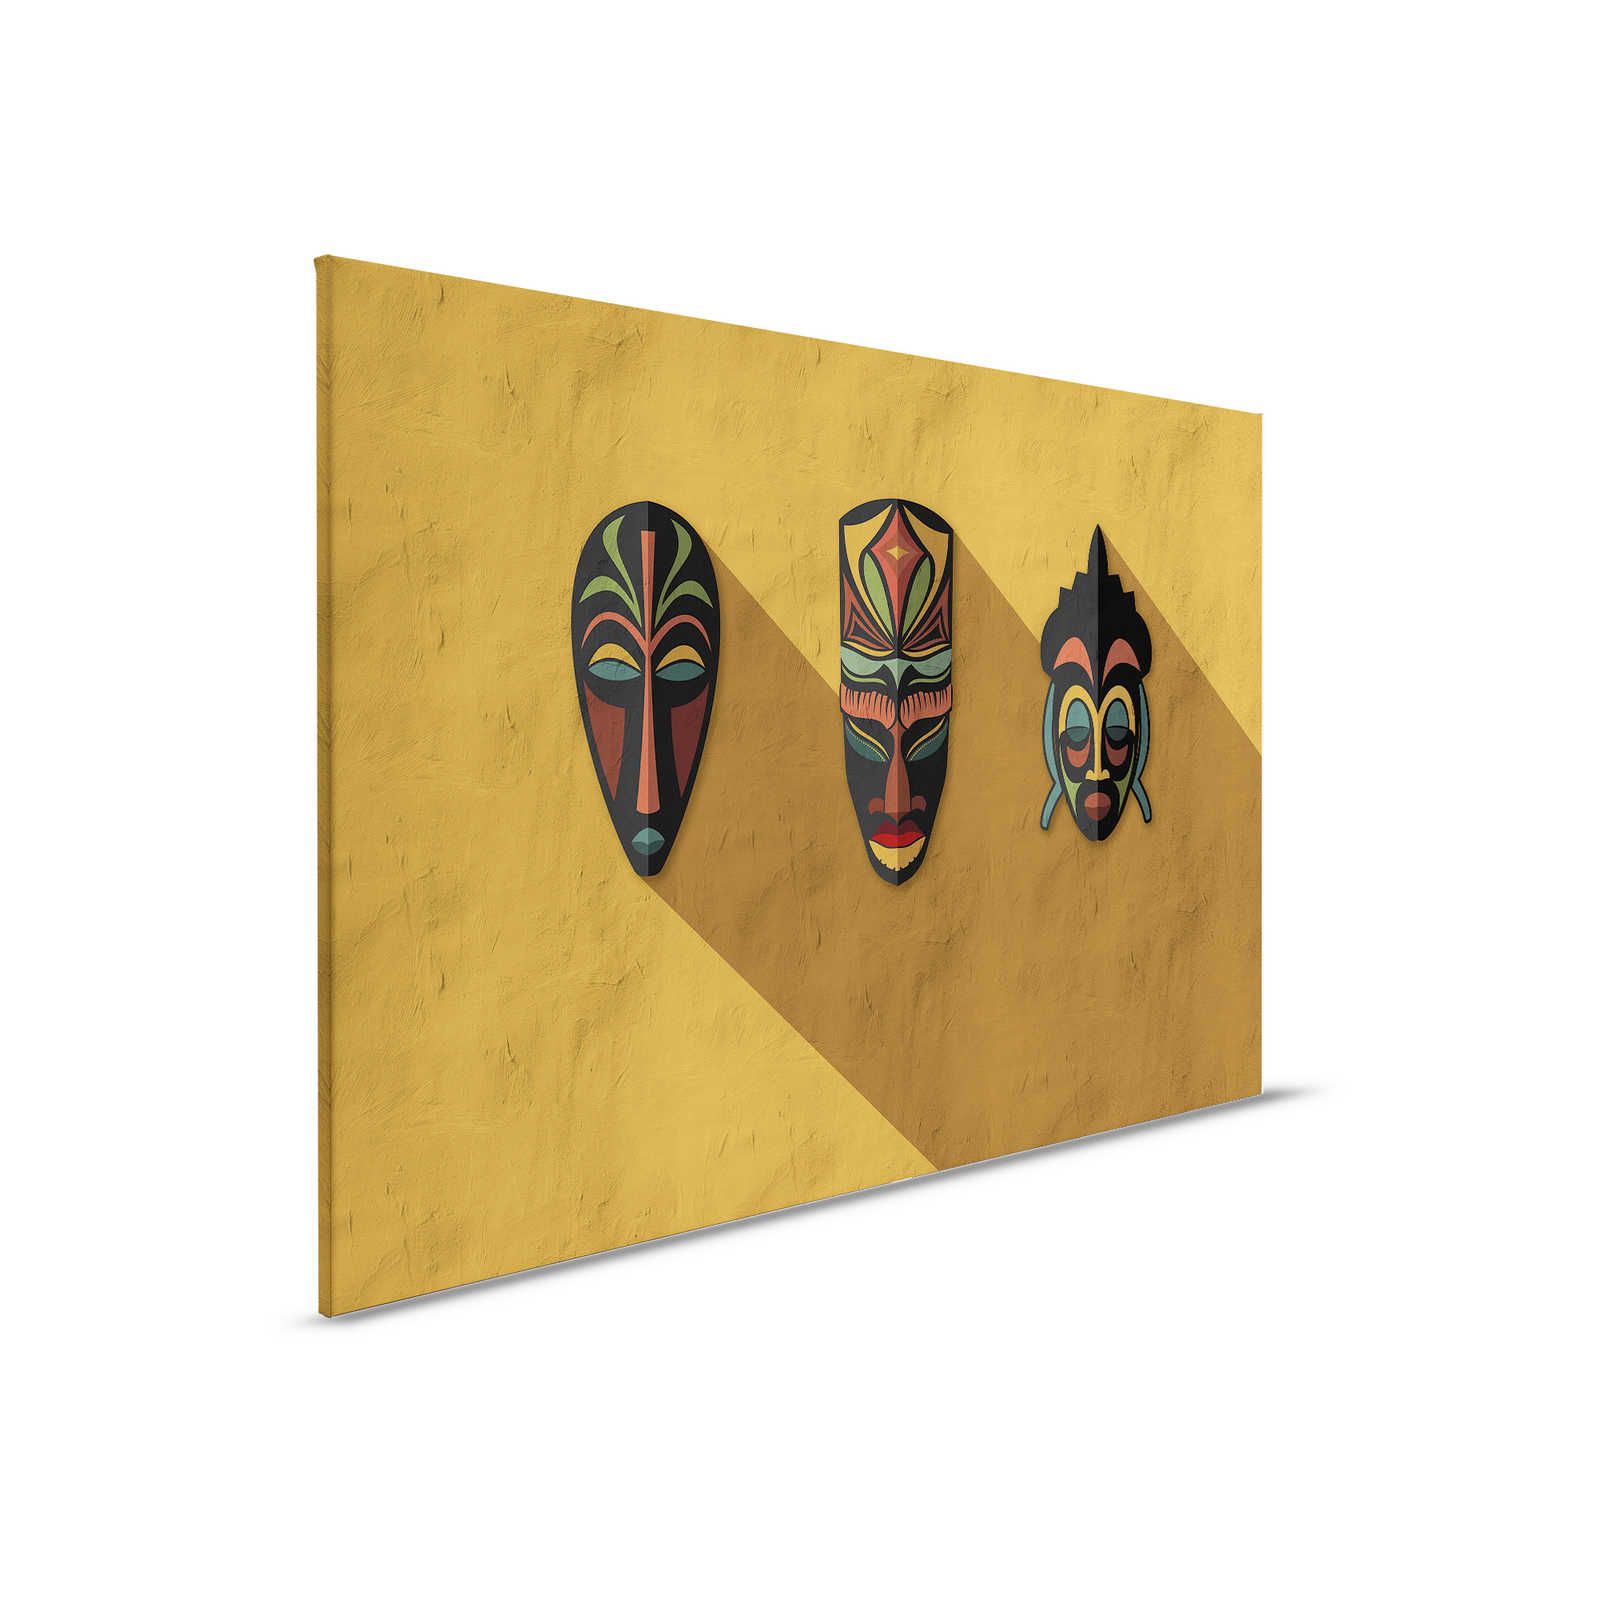         Zulu 1 - Leinwandbild Senfgelb, Afrika Masken Zulu Design – 0,90 m x 0,60 m
    